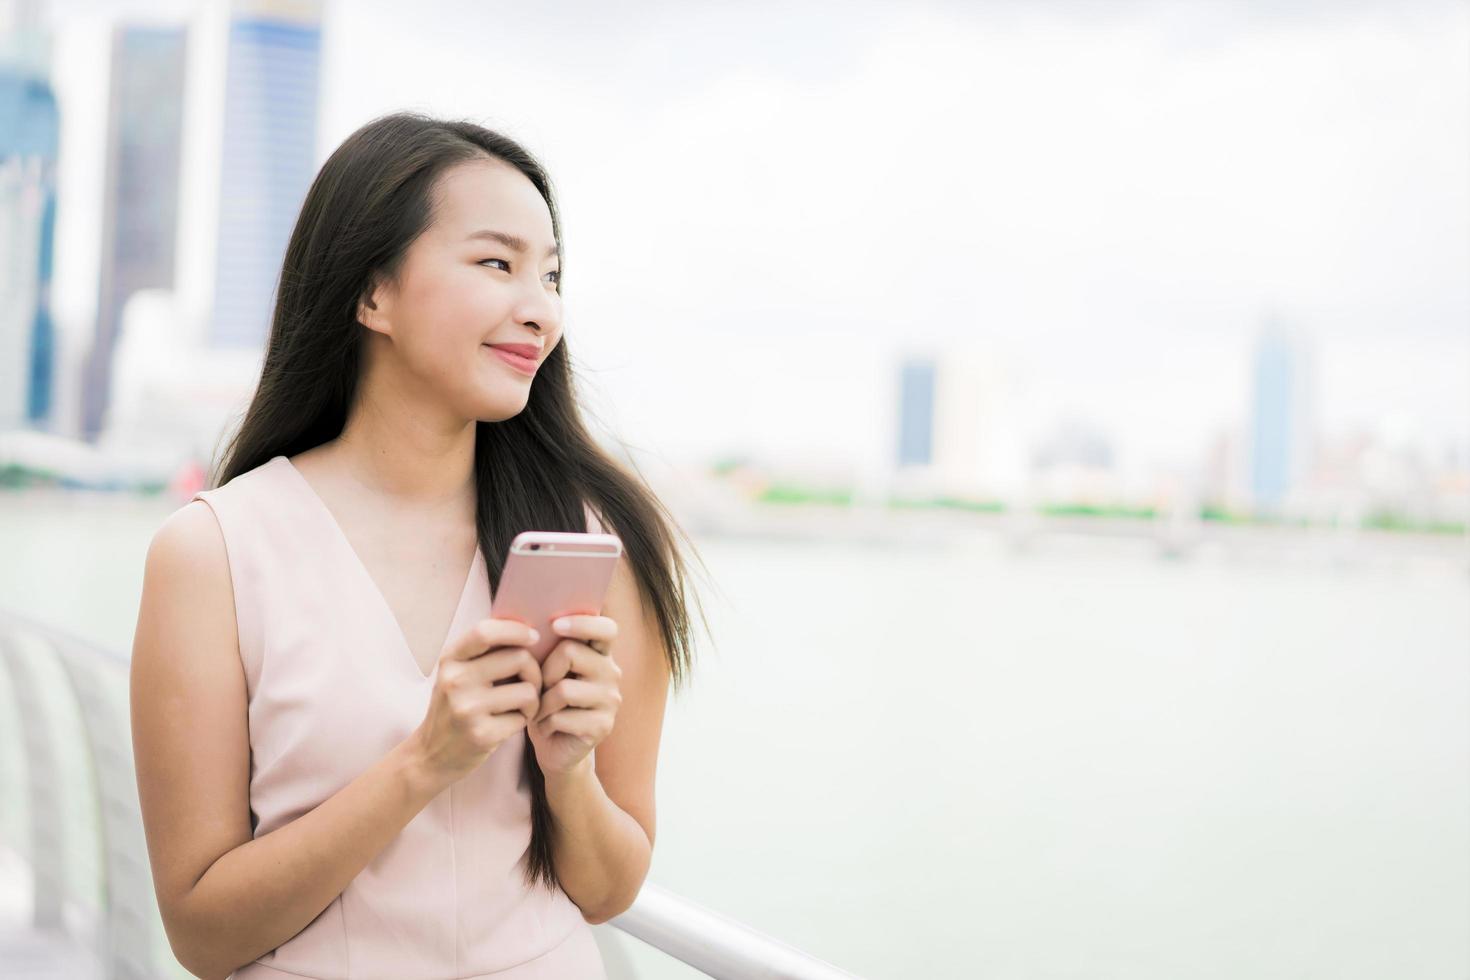 Aziatische vrouw die smartphone of mobiele telefoon gebruikt om te praten of te sms'en foto